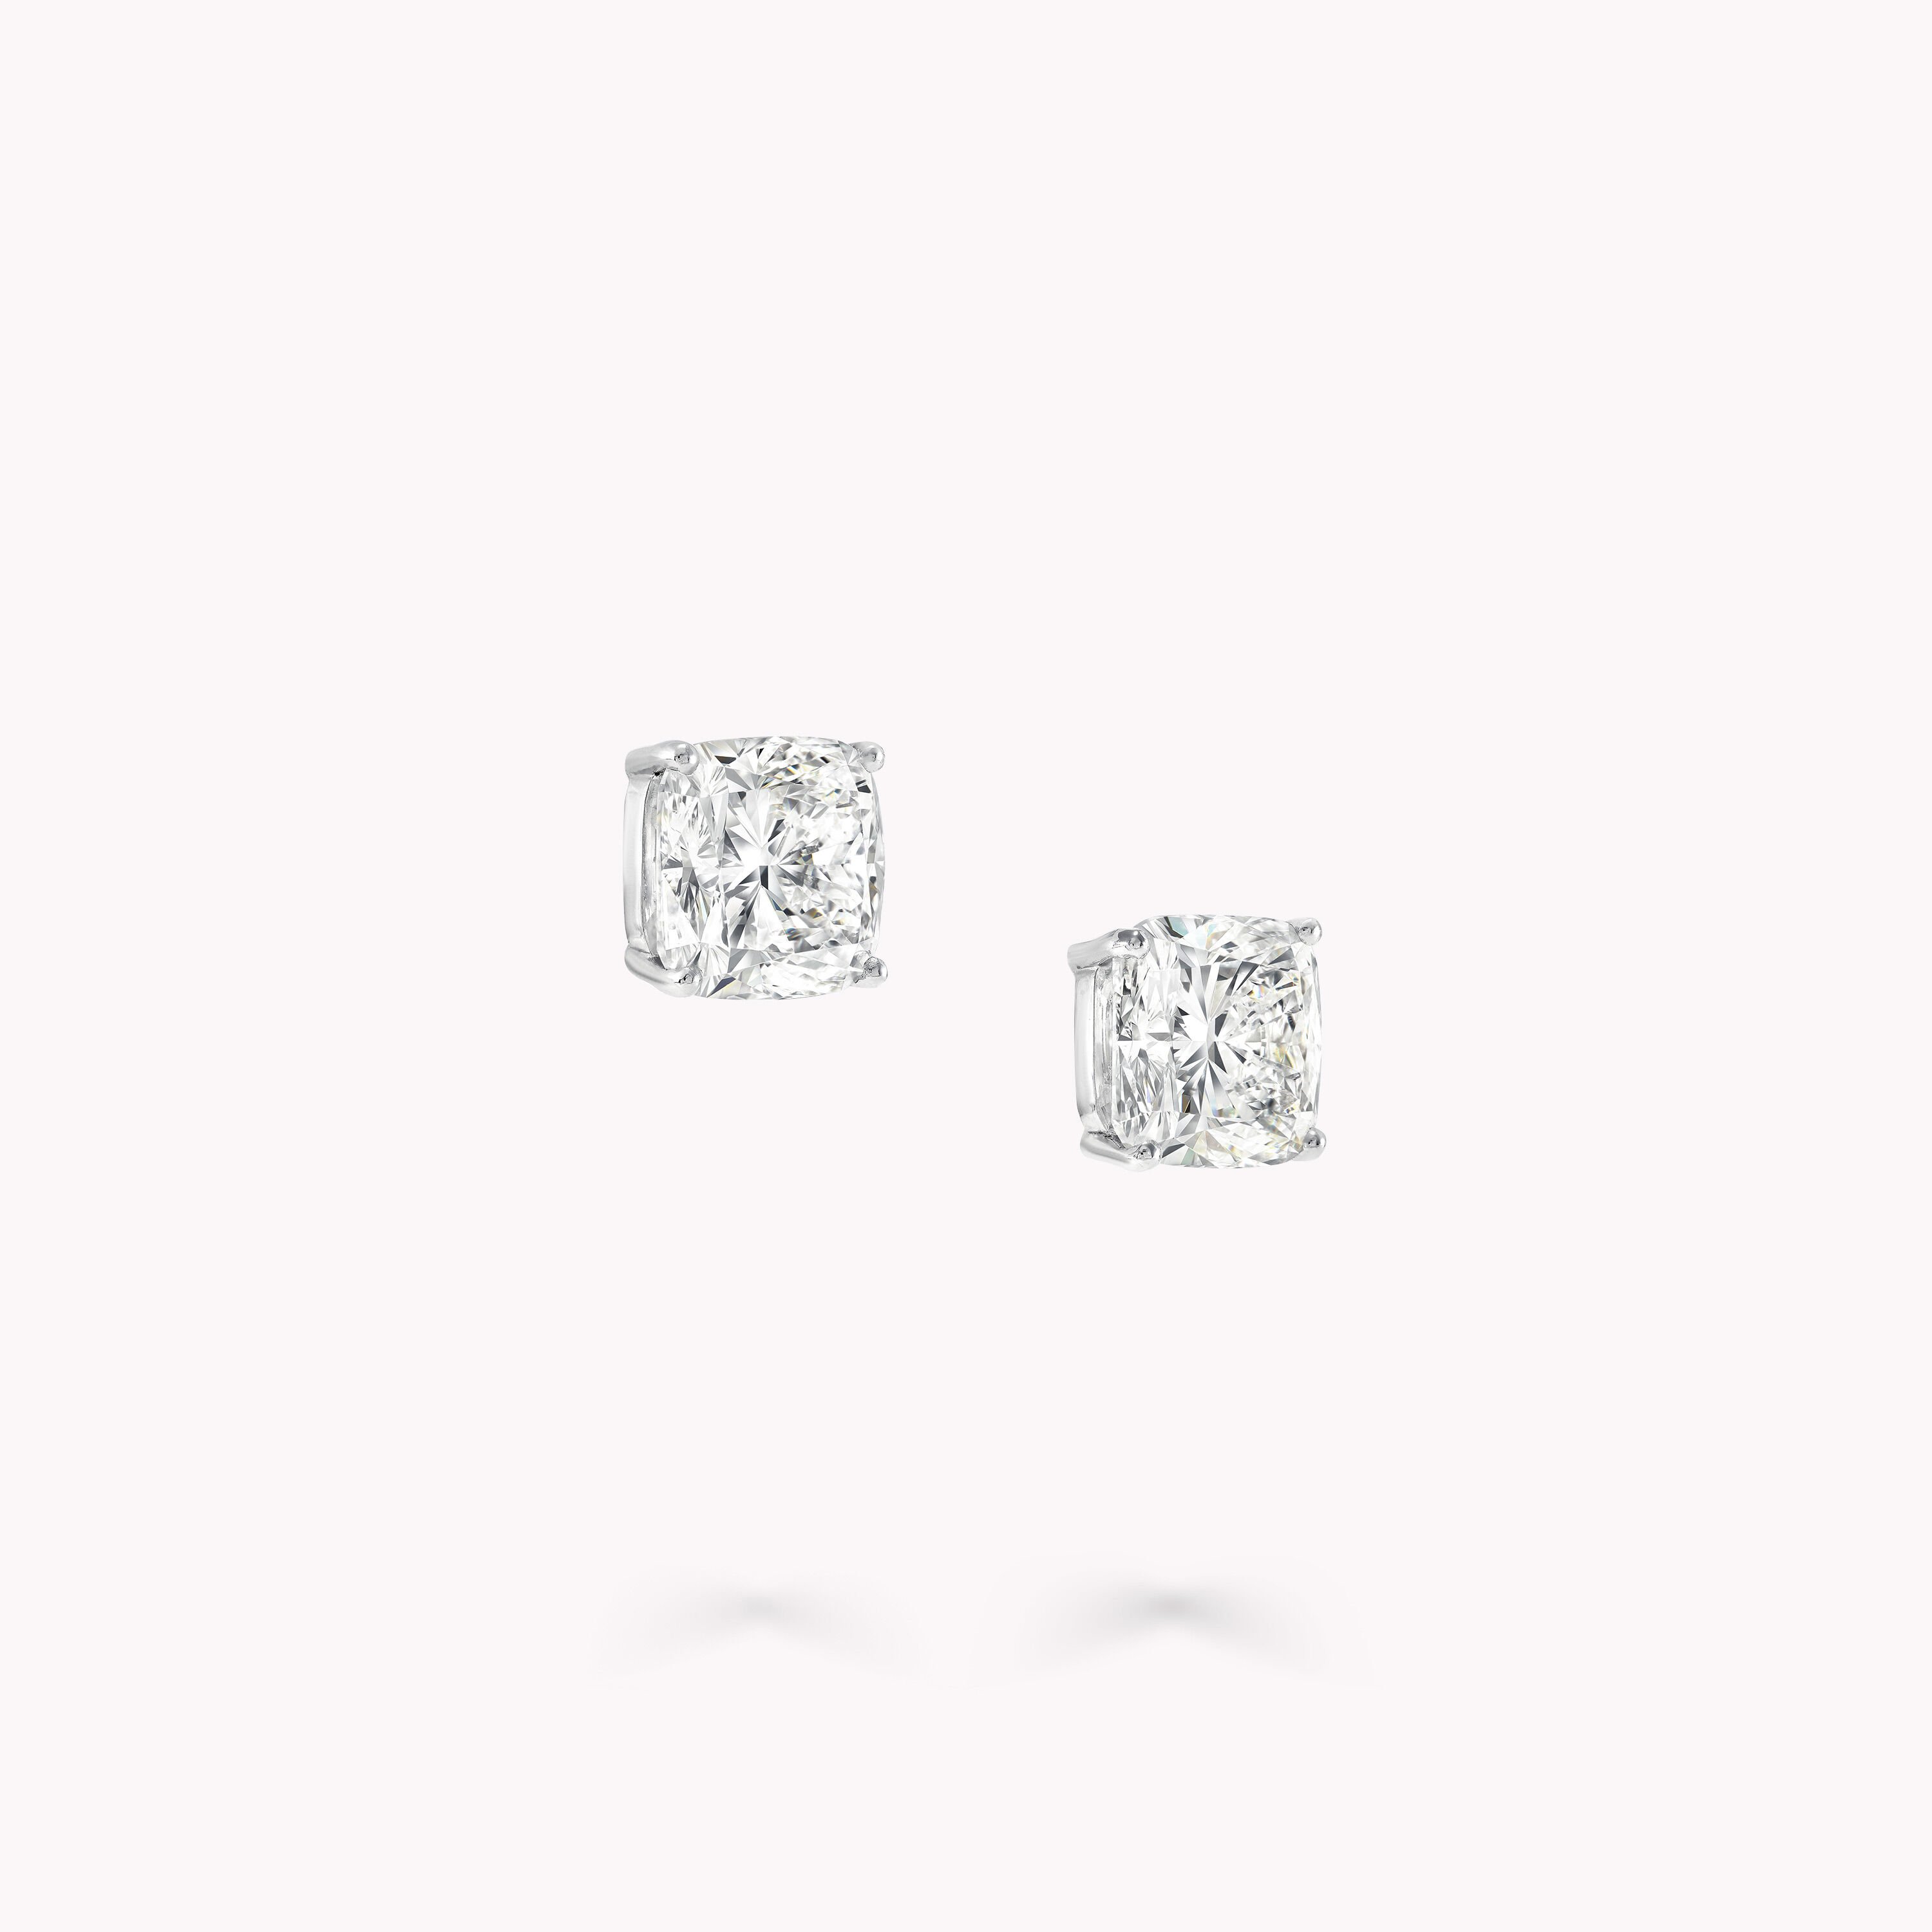 040 ctw Canadian Diamond Bezel Set Stud Earrings